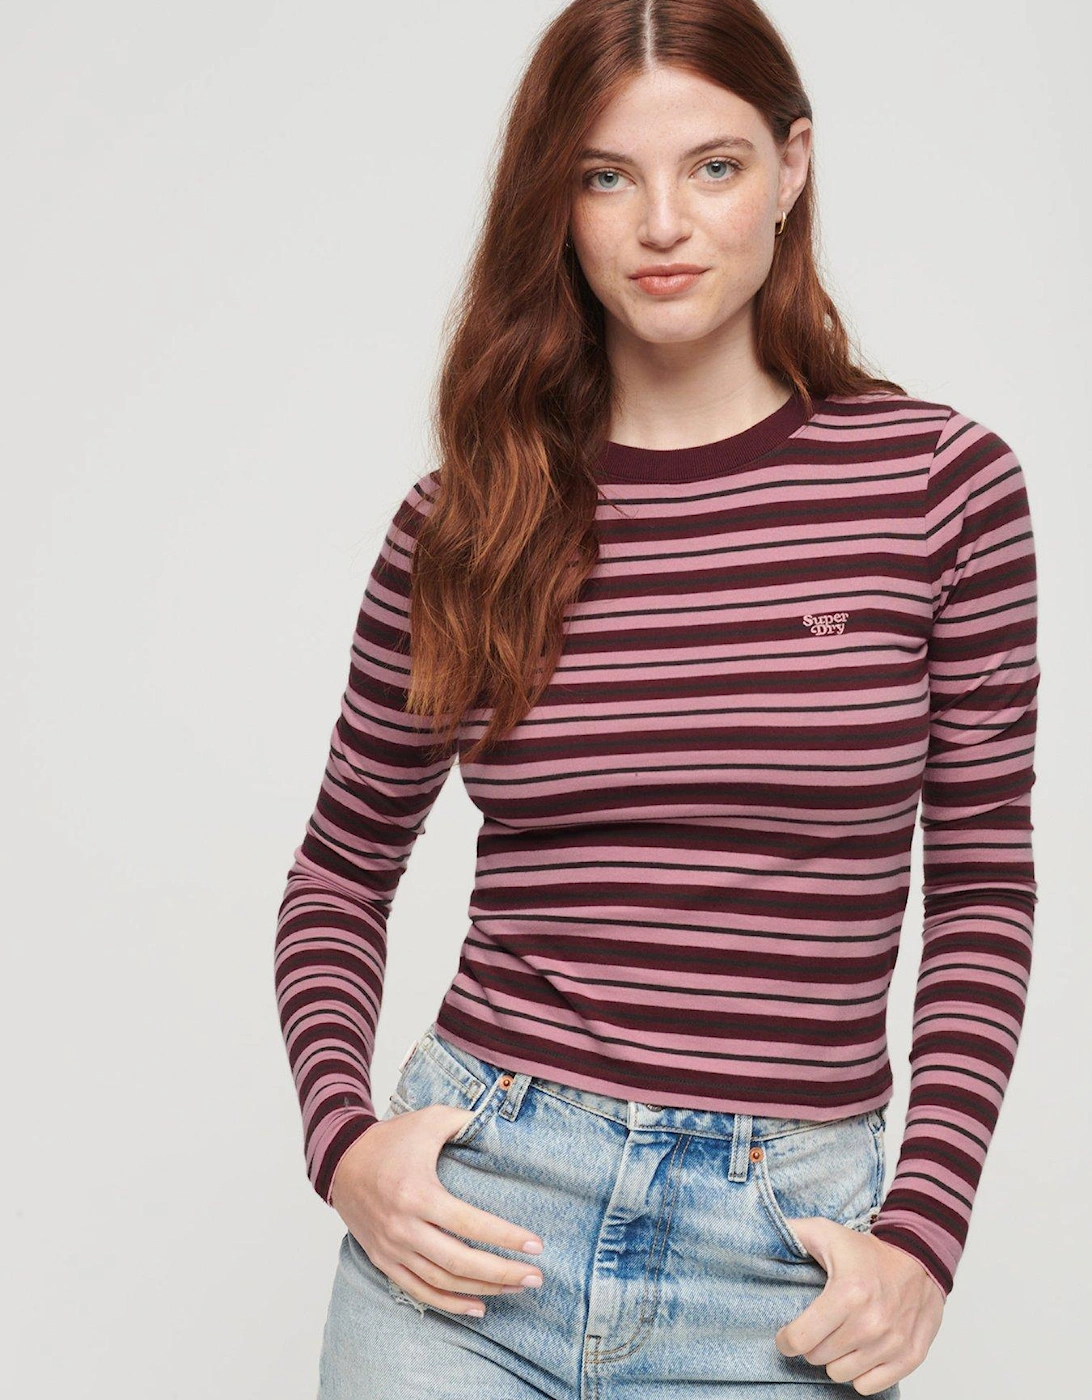 Stripe Long Sleeve Top - Pink, 2 of 1